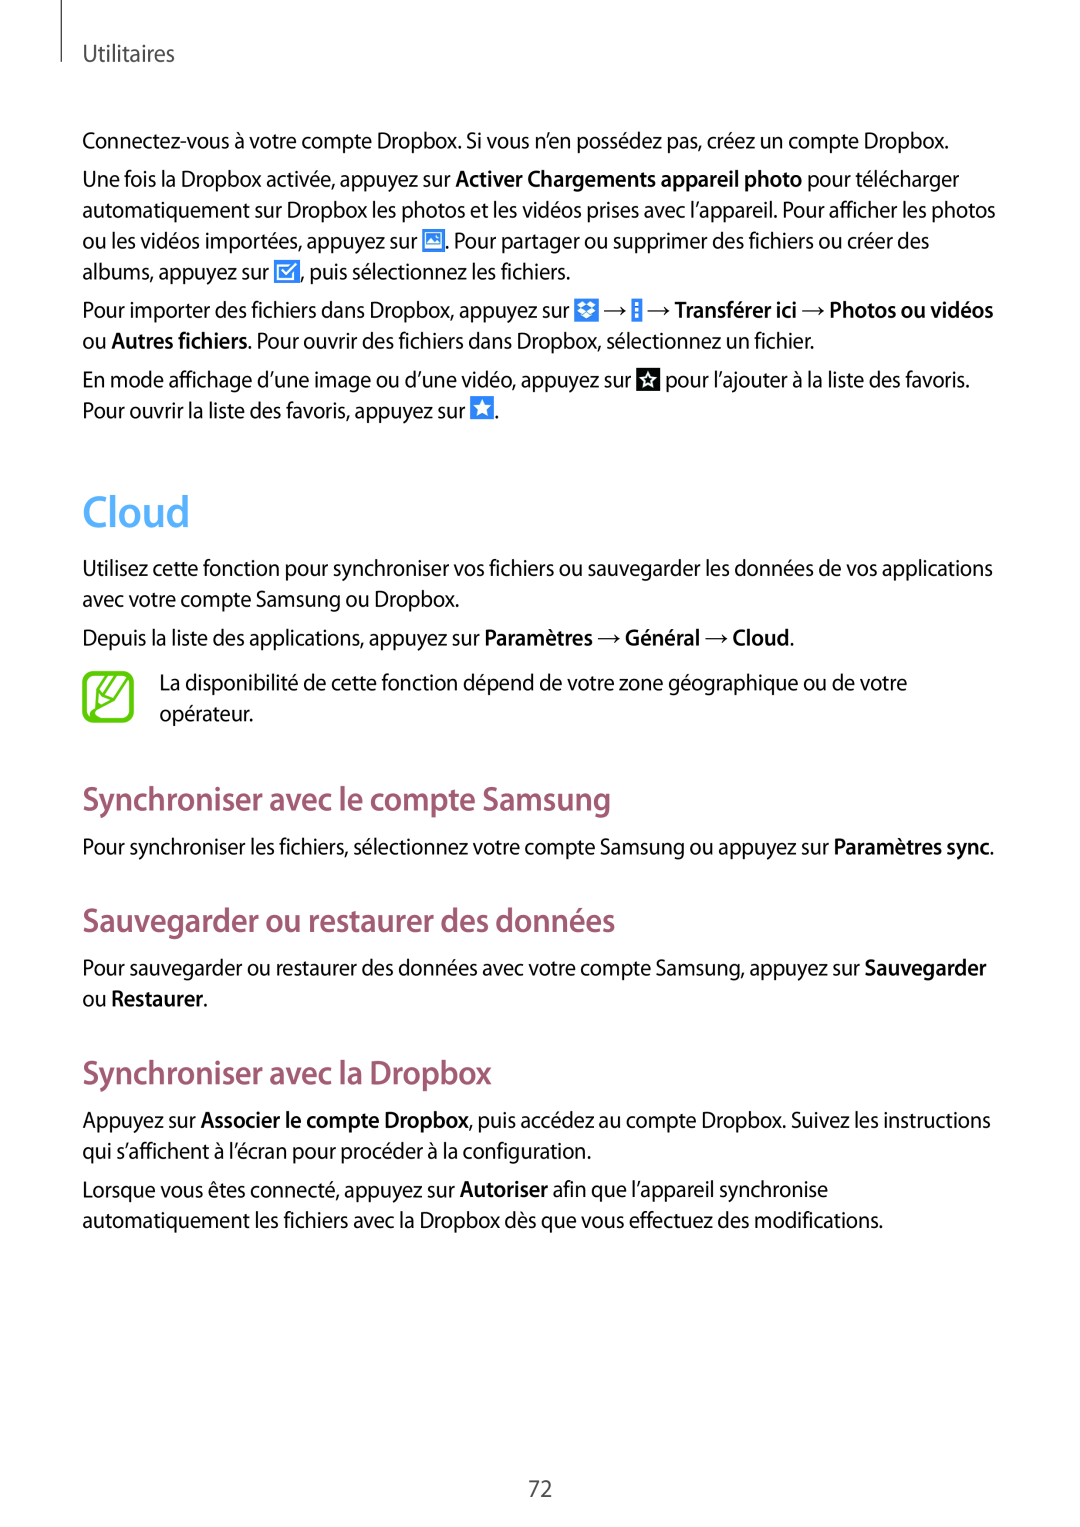 Samsung SM-T533NYKAXEF manual Cloud, Synchroniser avec le compte Samsung, Sauvegarder ou restaurer des données, Utilitaires 